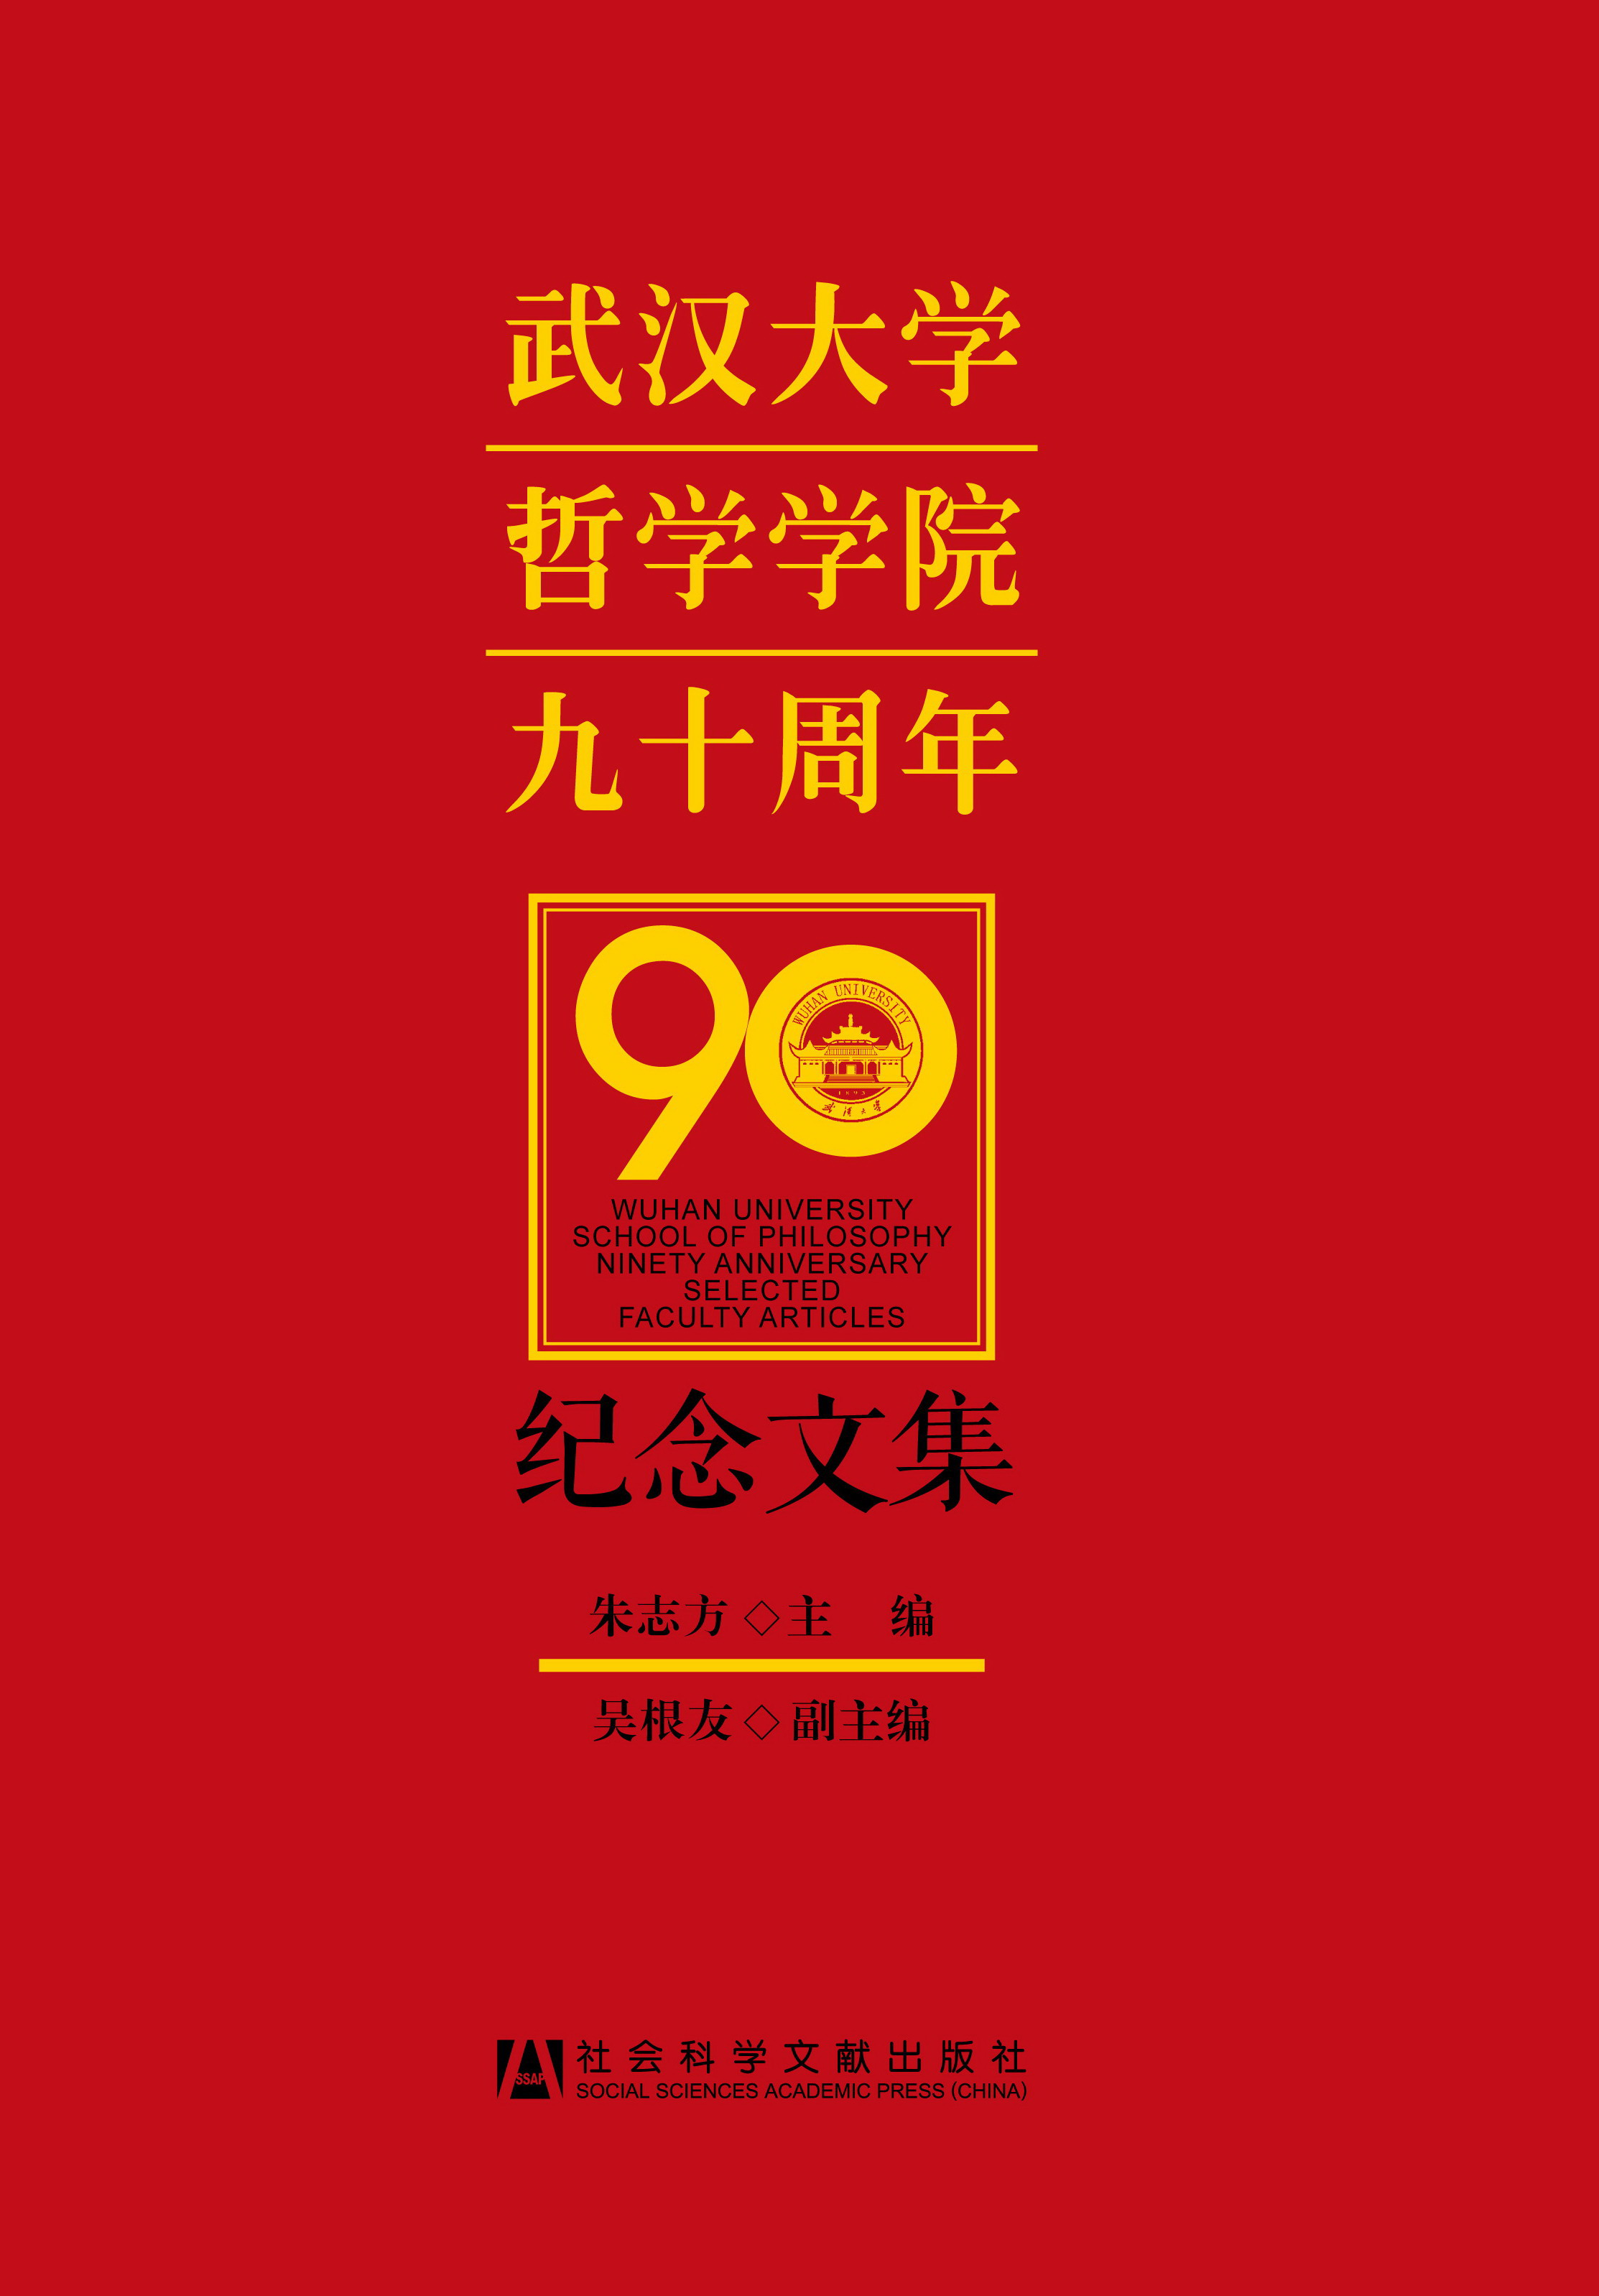 武汉大学哲学学院九十周年纪念文集